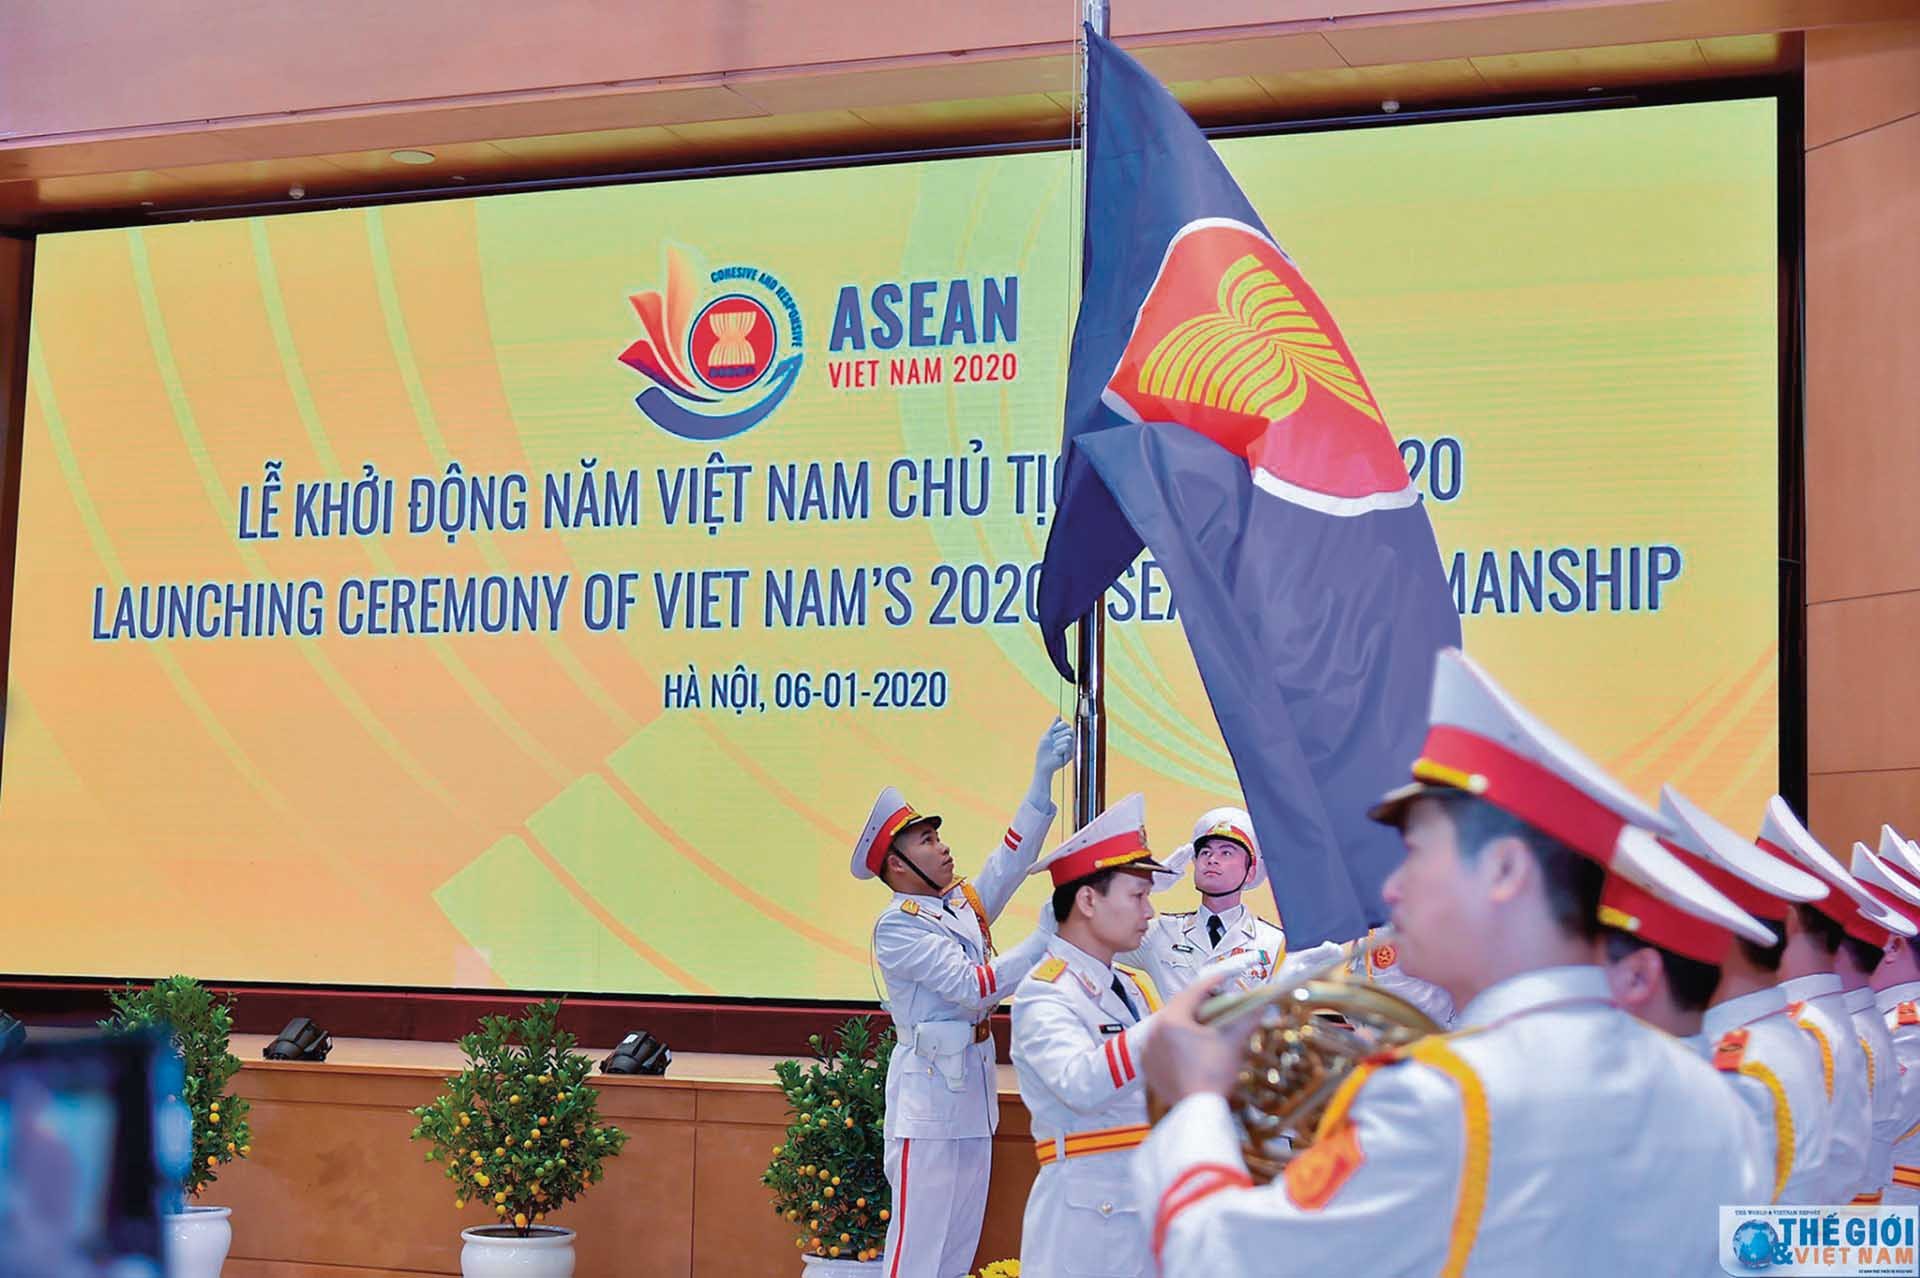 Cùng ASEAN viết tiếp câu chuyện thành công trong tương lai